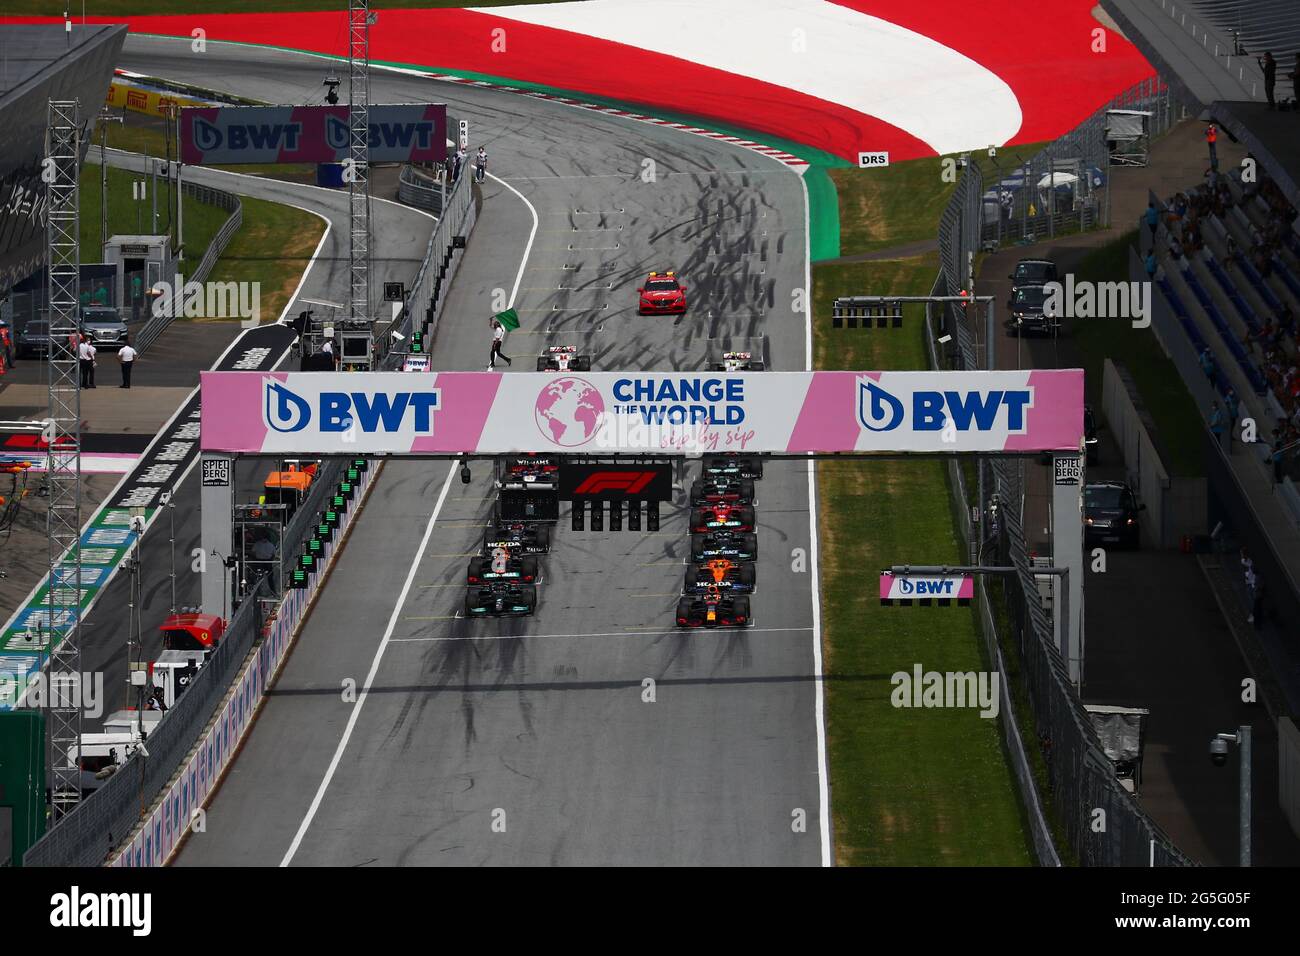 Inizia il GP di Stiria 2021, campionato del mondo di Formula 1 2021, 24-27 giugno 2021 Foto Stock